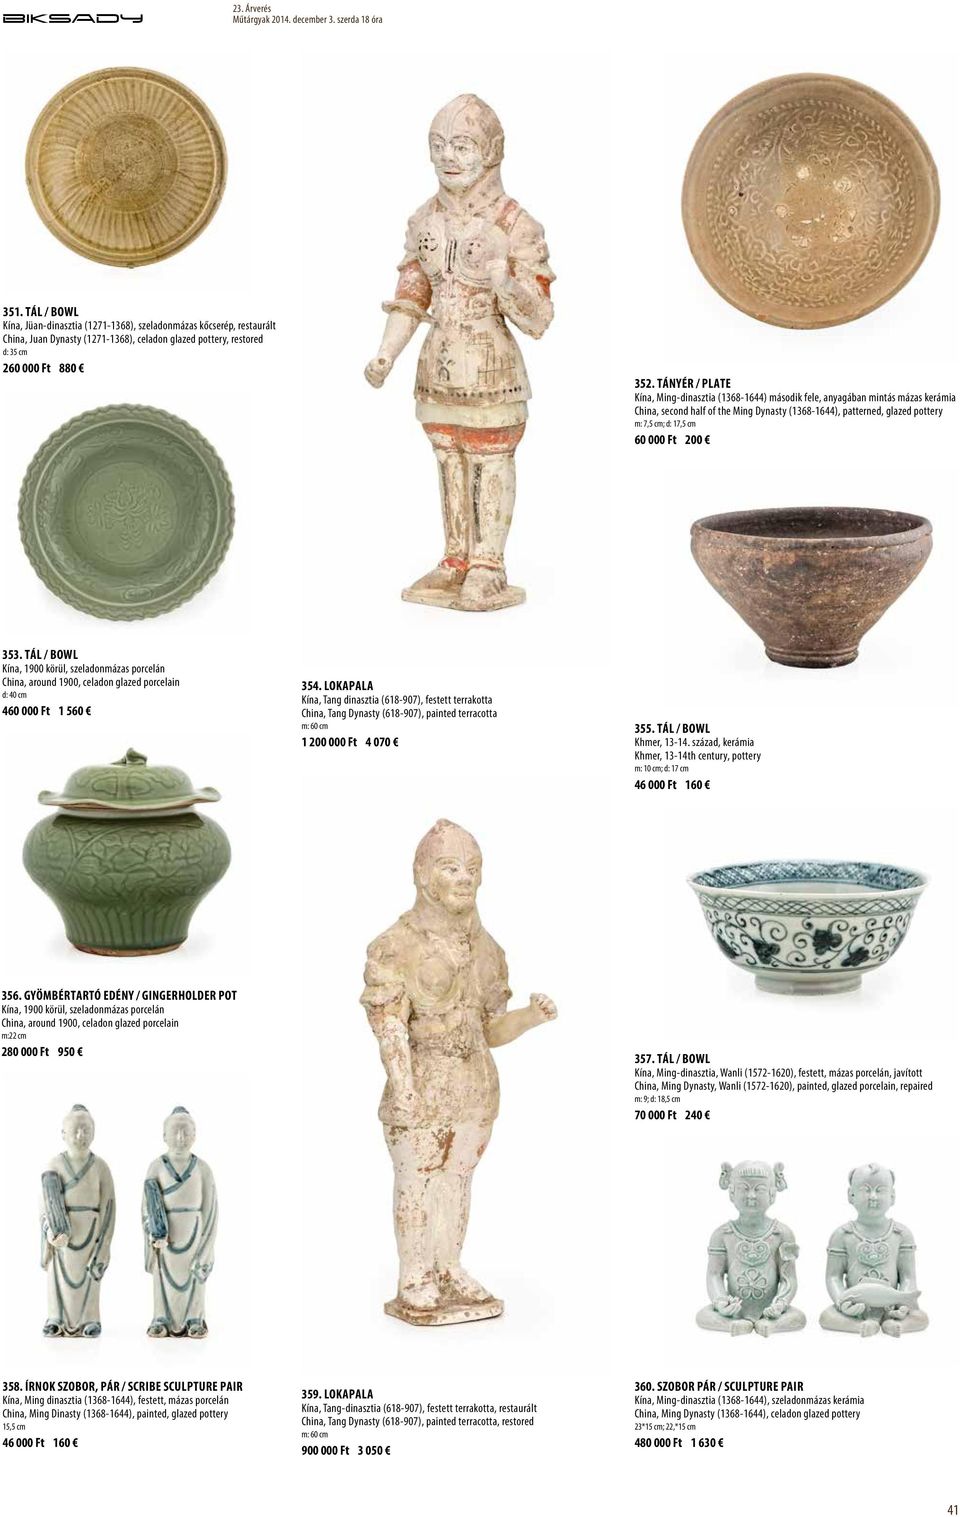 Ft 200 353. Tál / Bowl Kína, 1900 körül, szeladonmázas porcelán China, around 1900, celadon glazed porcelain d: 40 cm 460 000 Ft 1 560 354.